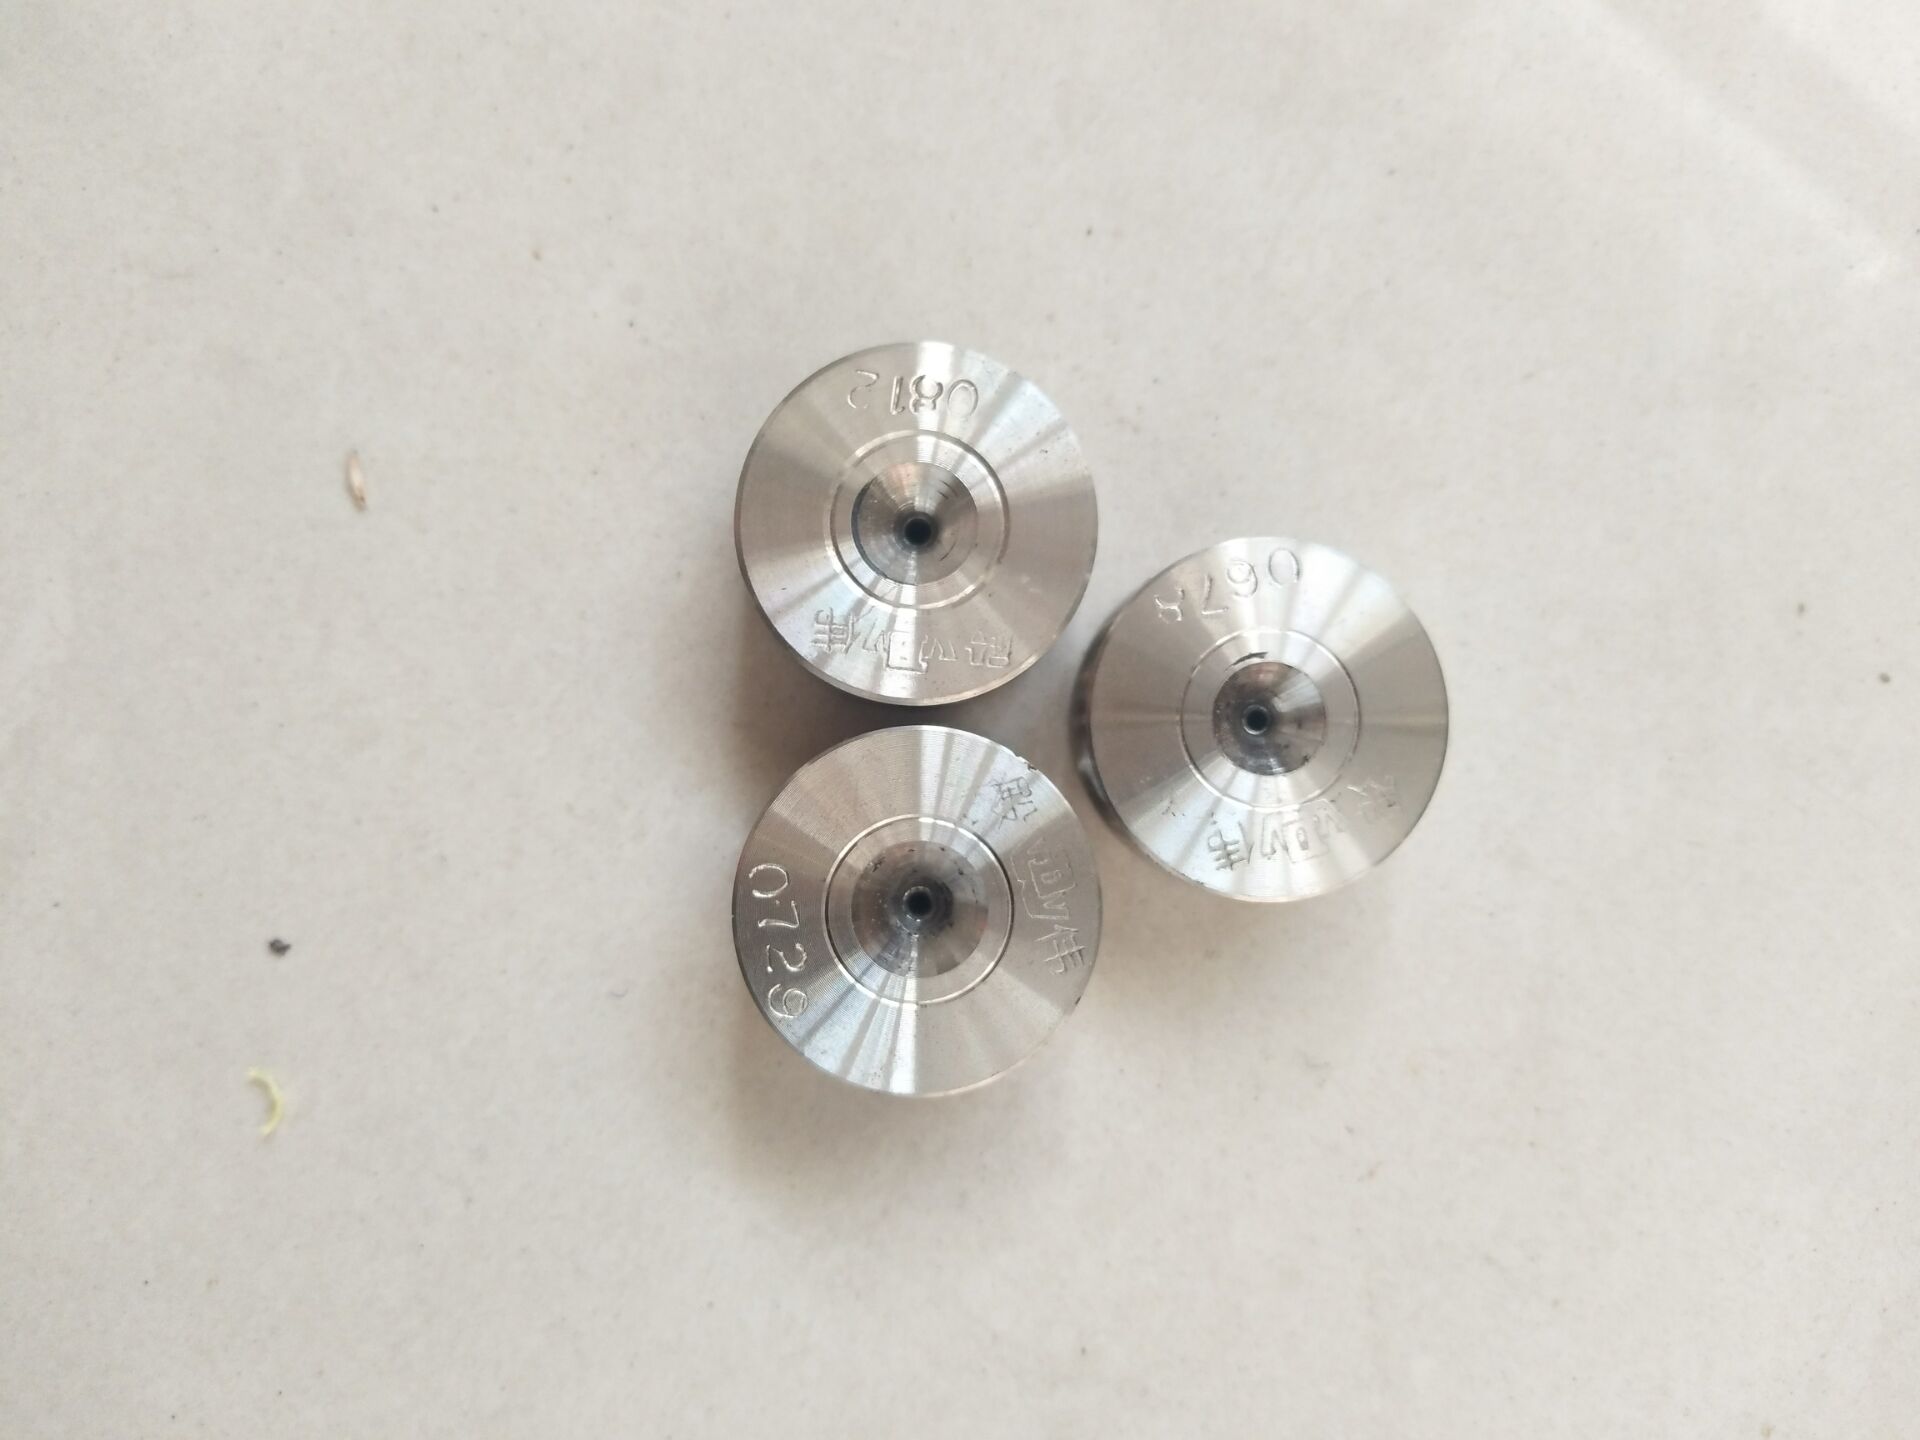 钻石高晶 CD模具适用0.15至1.00mm 铜丝 铝镁 铜包铝各种金属线材 标准件/零部件/工业耗材 模具 原图主图